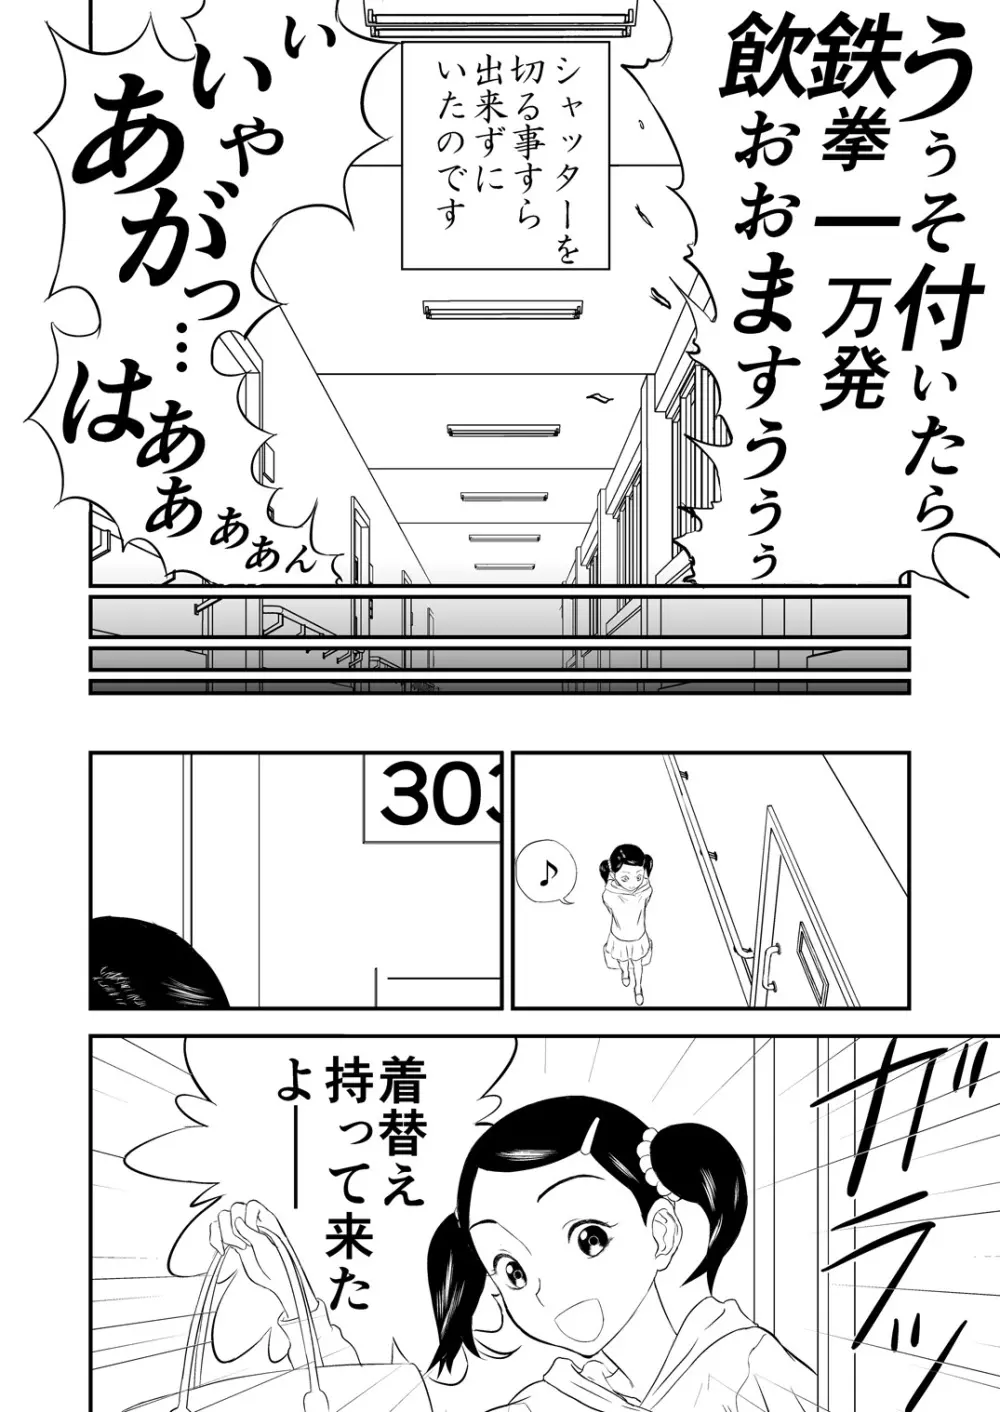 [笑談者] 妄想名作蔵出し劇場その(2) 「なんキテ弐」 52ページ